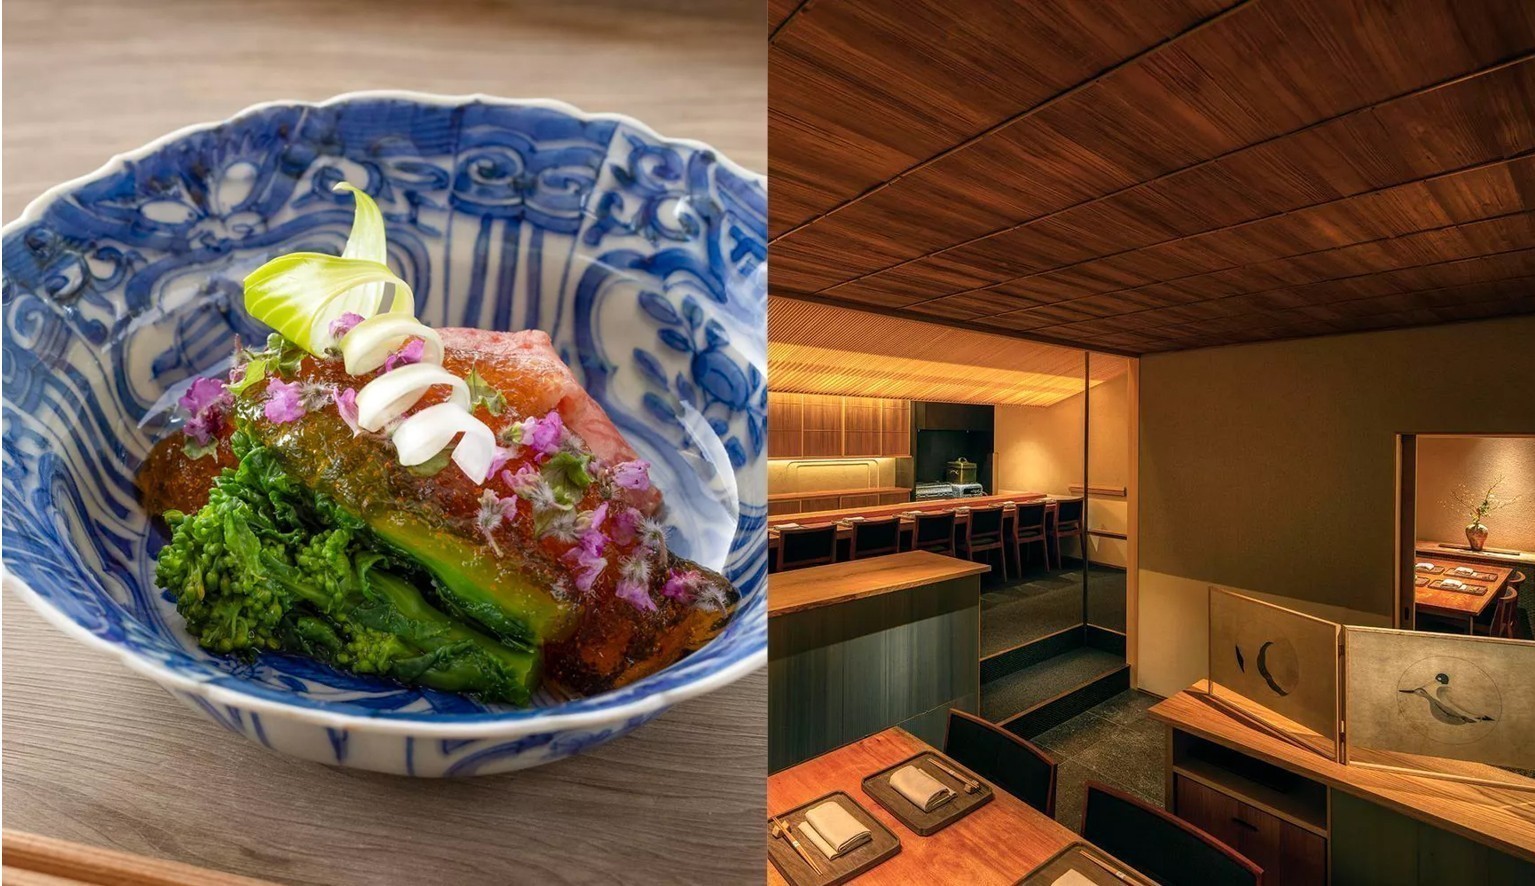 Τόκυο: Παγκόσμια γαστρονομική πρωτεύουσα με 200 εστιατόρια και σύνολο 263 αστέρια Michelin